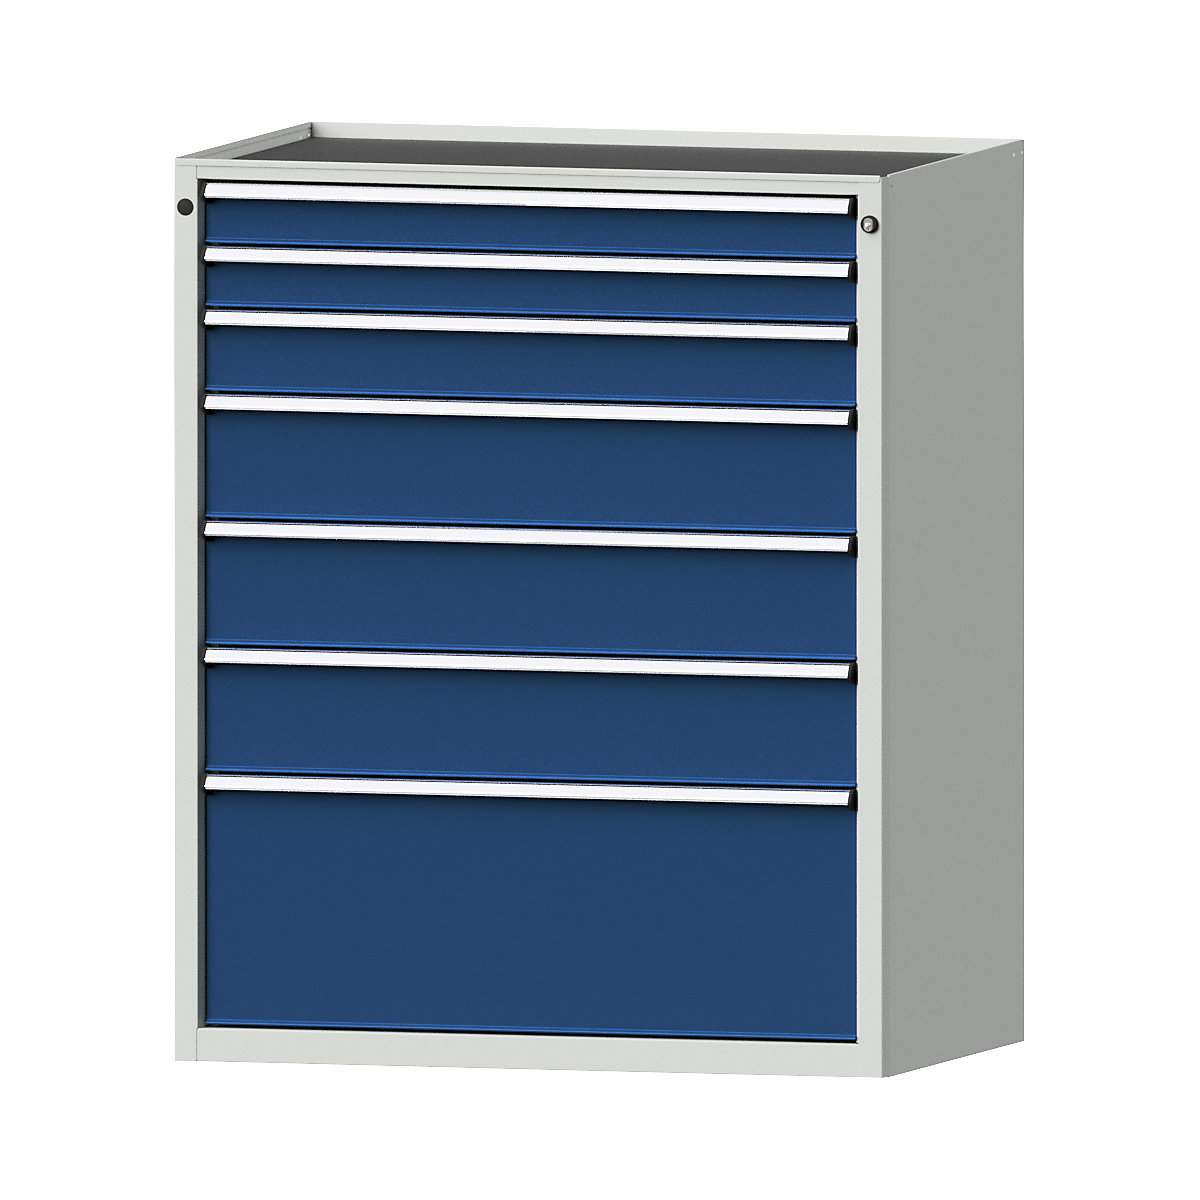 Armoire à tiroirs – ANKE, l x p 1060 x 675 mm, charge max. tiroirs 200 kg, 7 tiroirs, hauteur 1280 mm, façade bleu gentiane-13